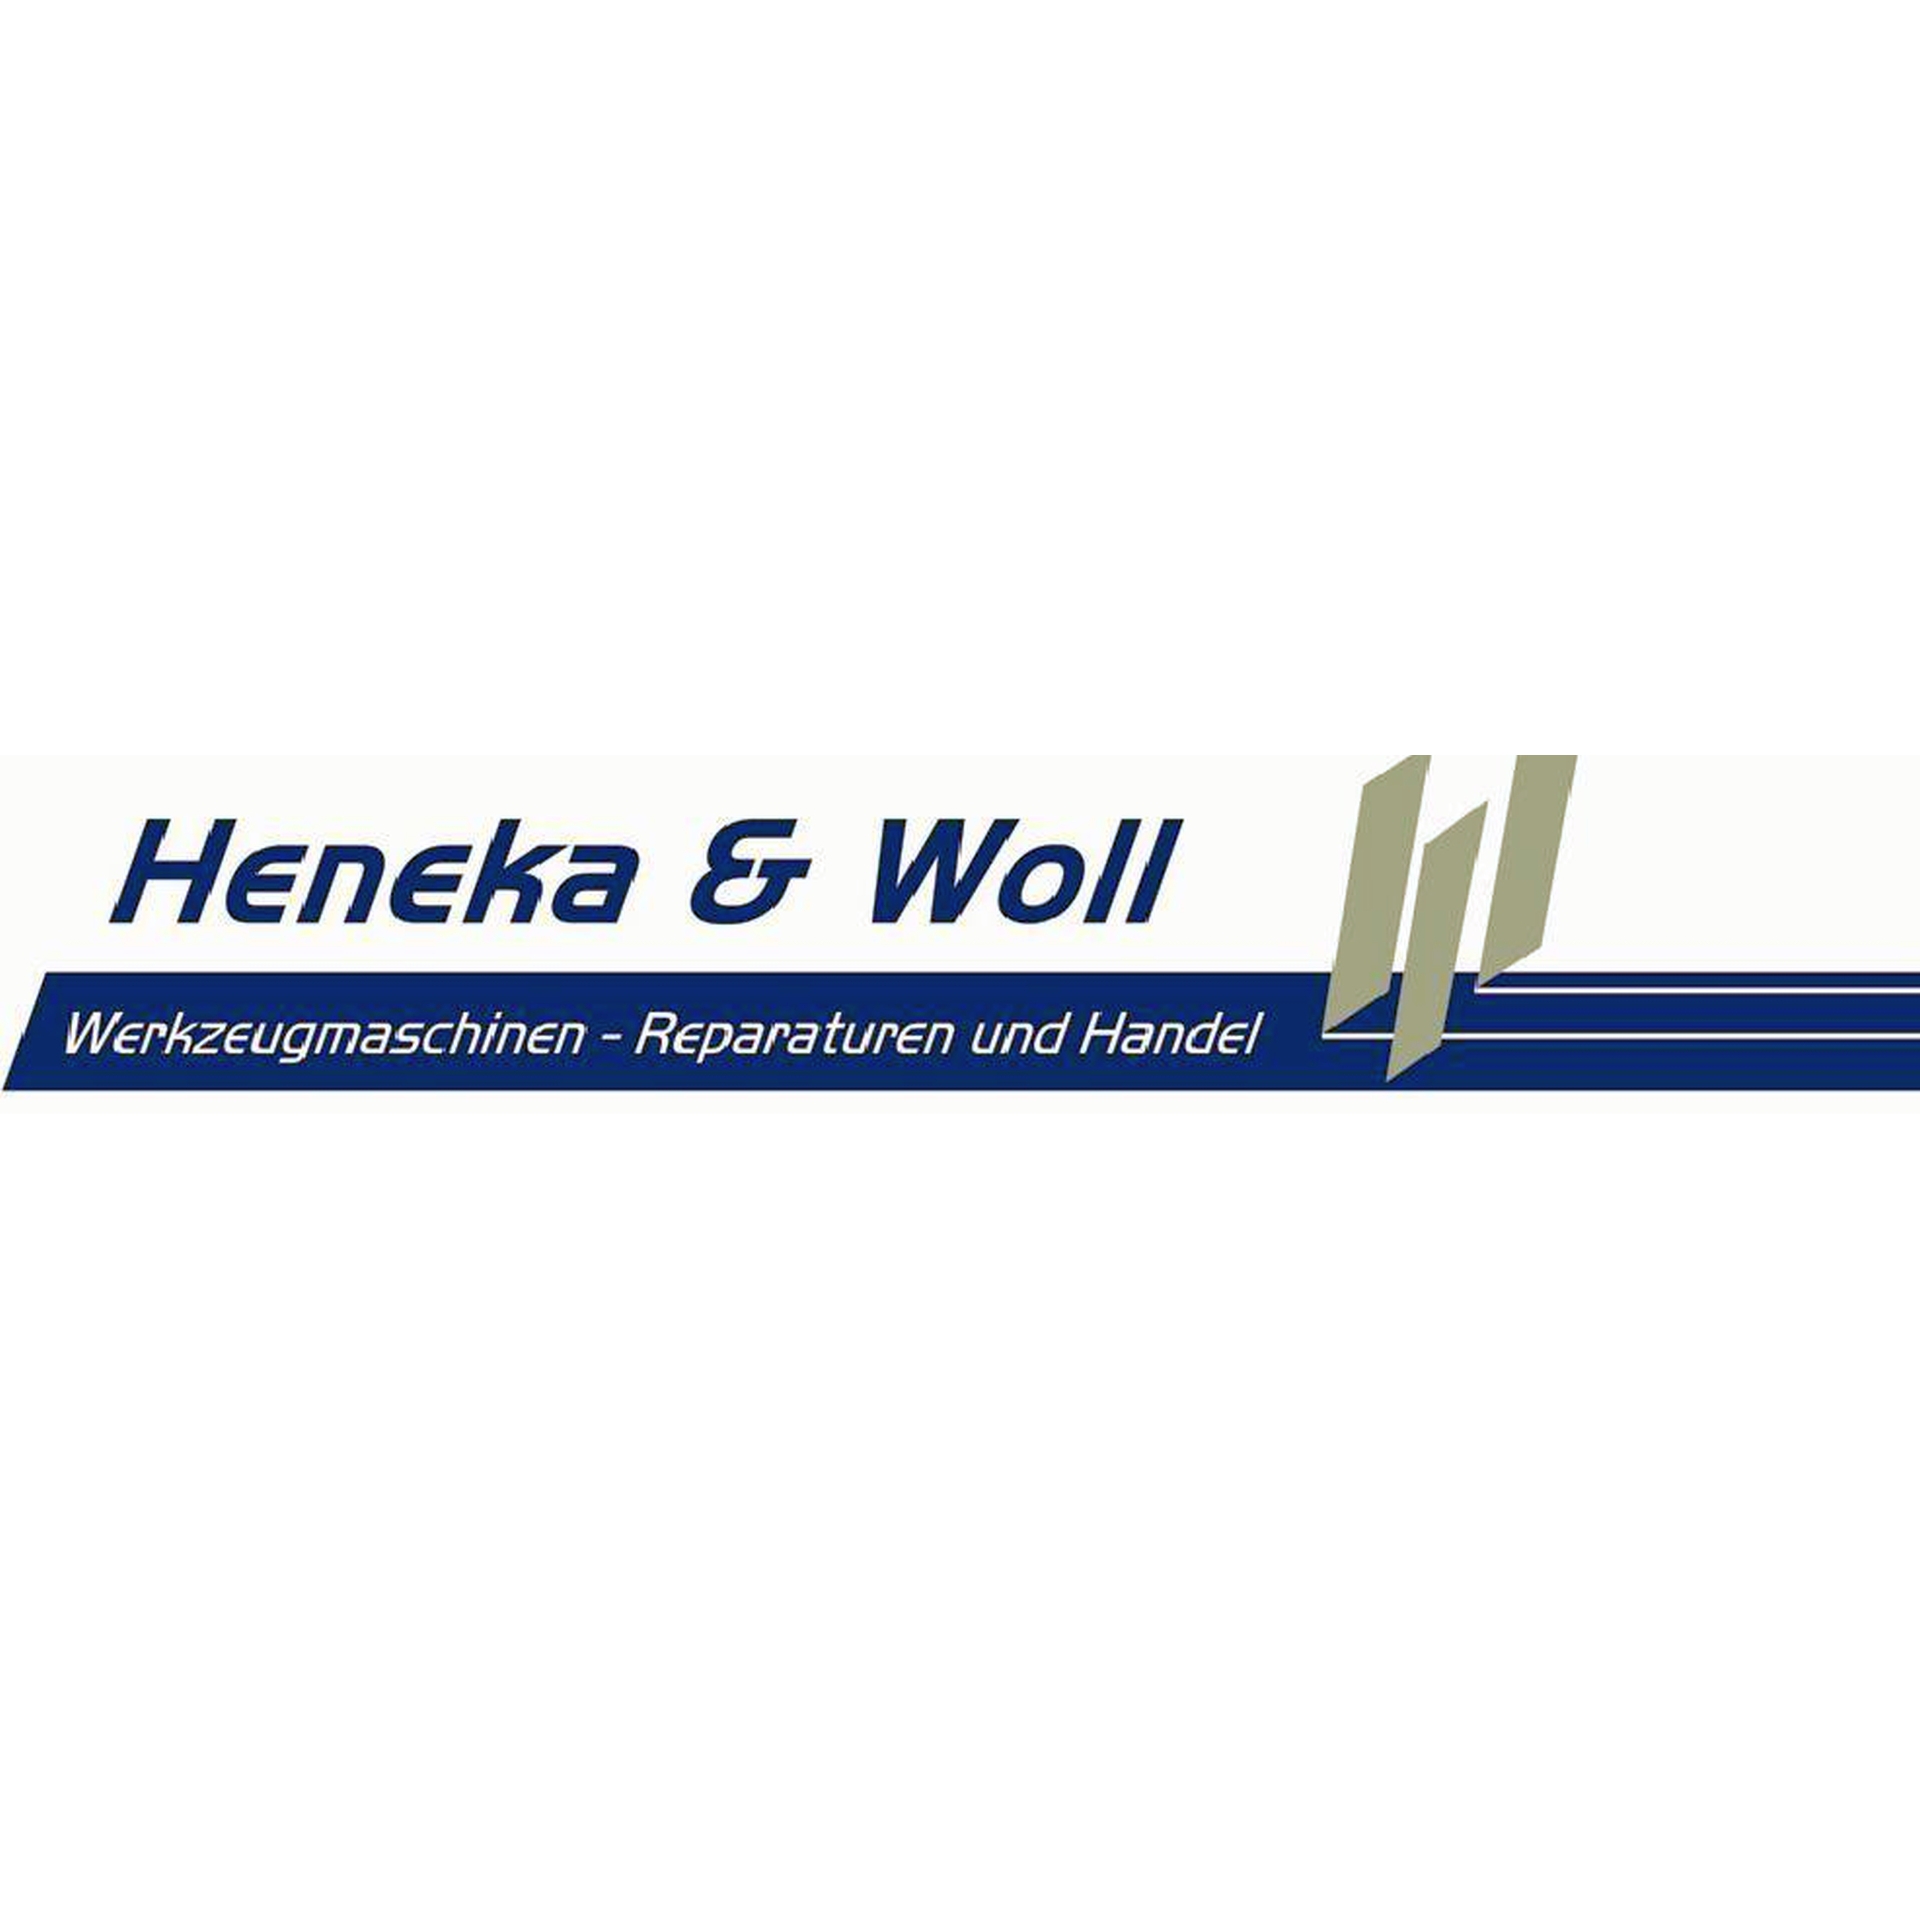 Heneka & Woll Werkzeugmaschinen - Reparatur & Handel in Ubstadt Weiher - Logo